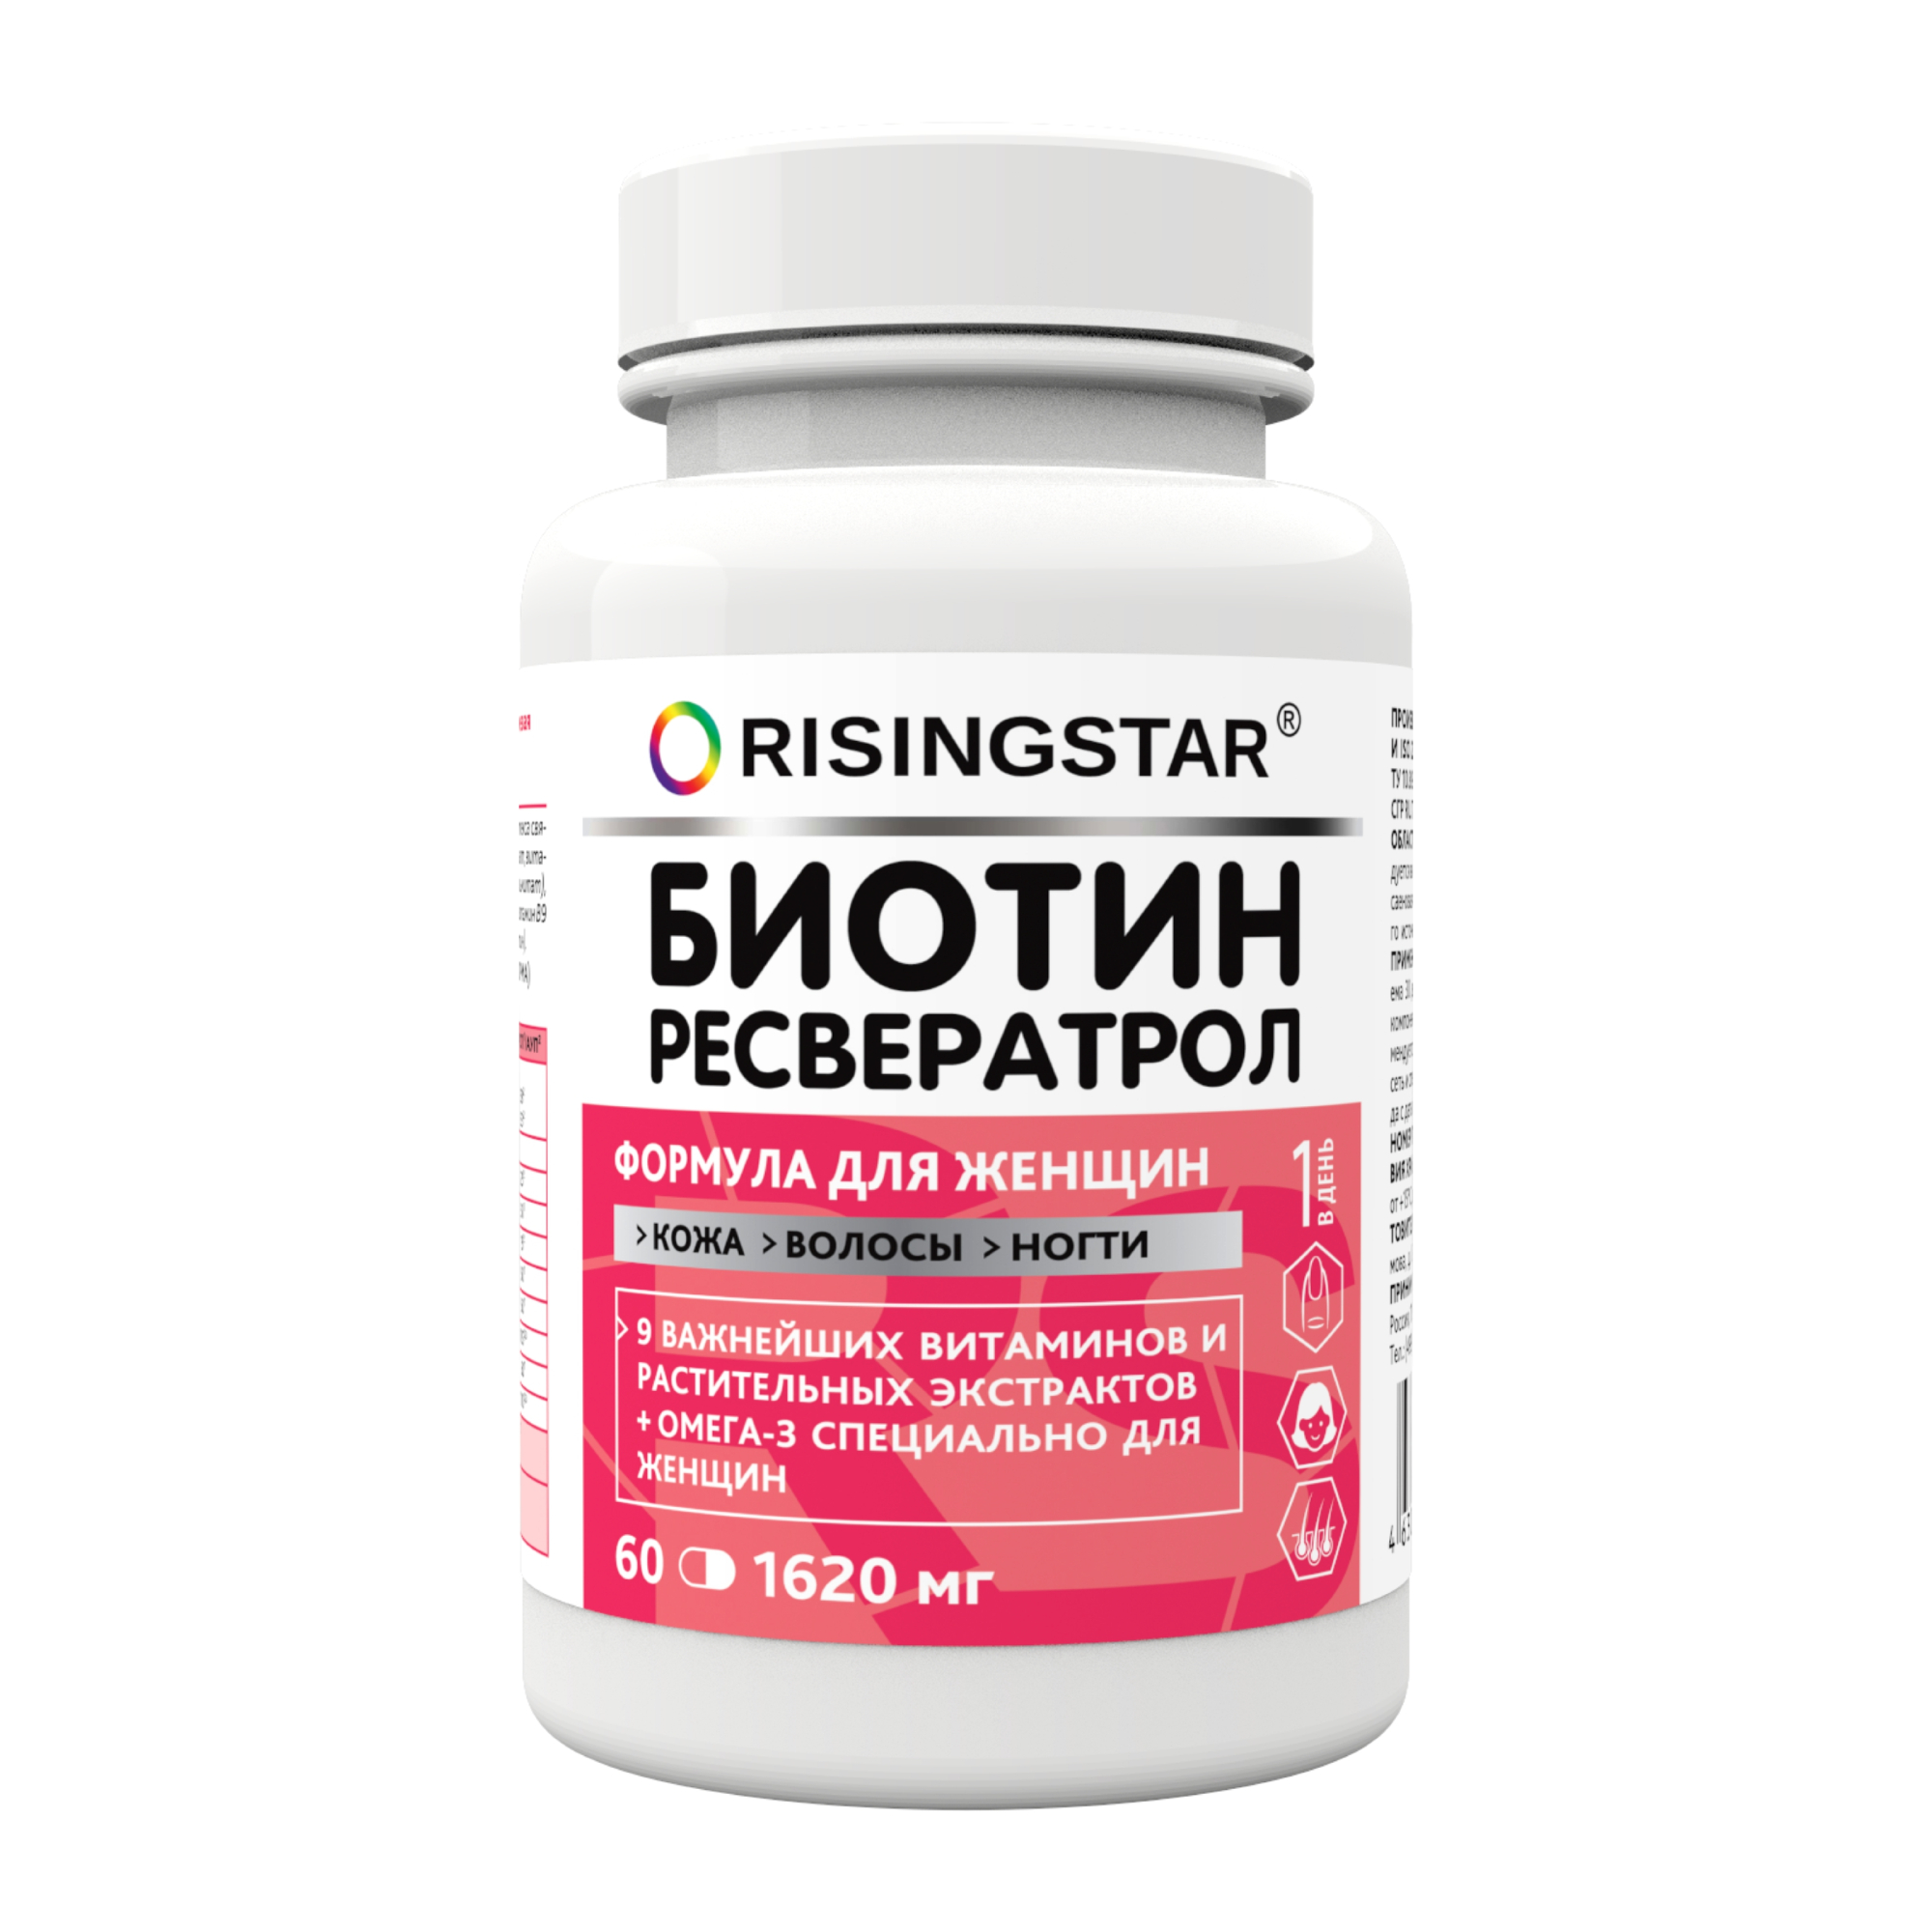 БАД Risingstar биотин+фолиевая кислота с омега-3 для женщин 60 таблеток, 100 г ризингстар биотин и фолиевая кислота с омега 3 капс 1620мг 60 бад